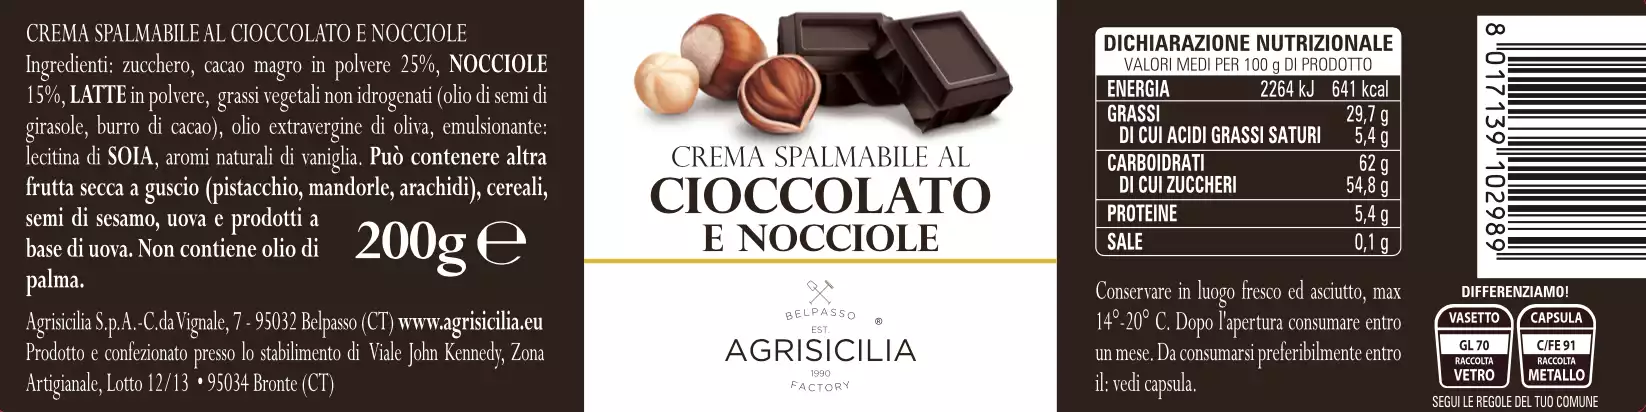 Crema Di Cioccolato E Nocciole